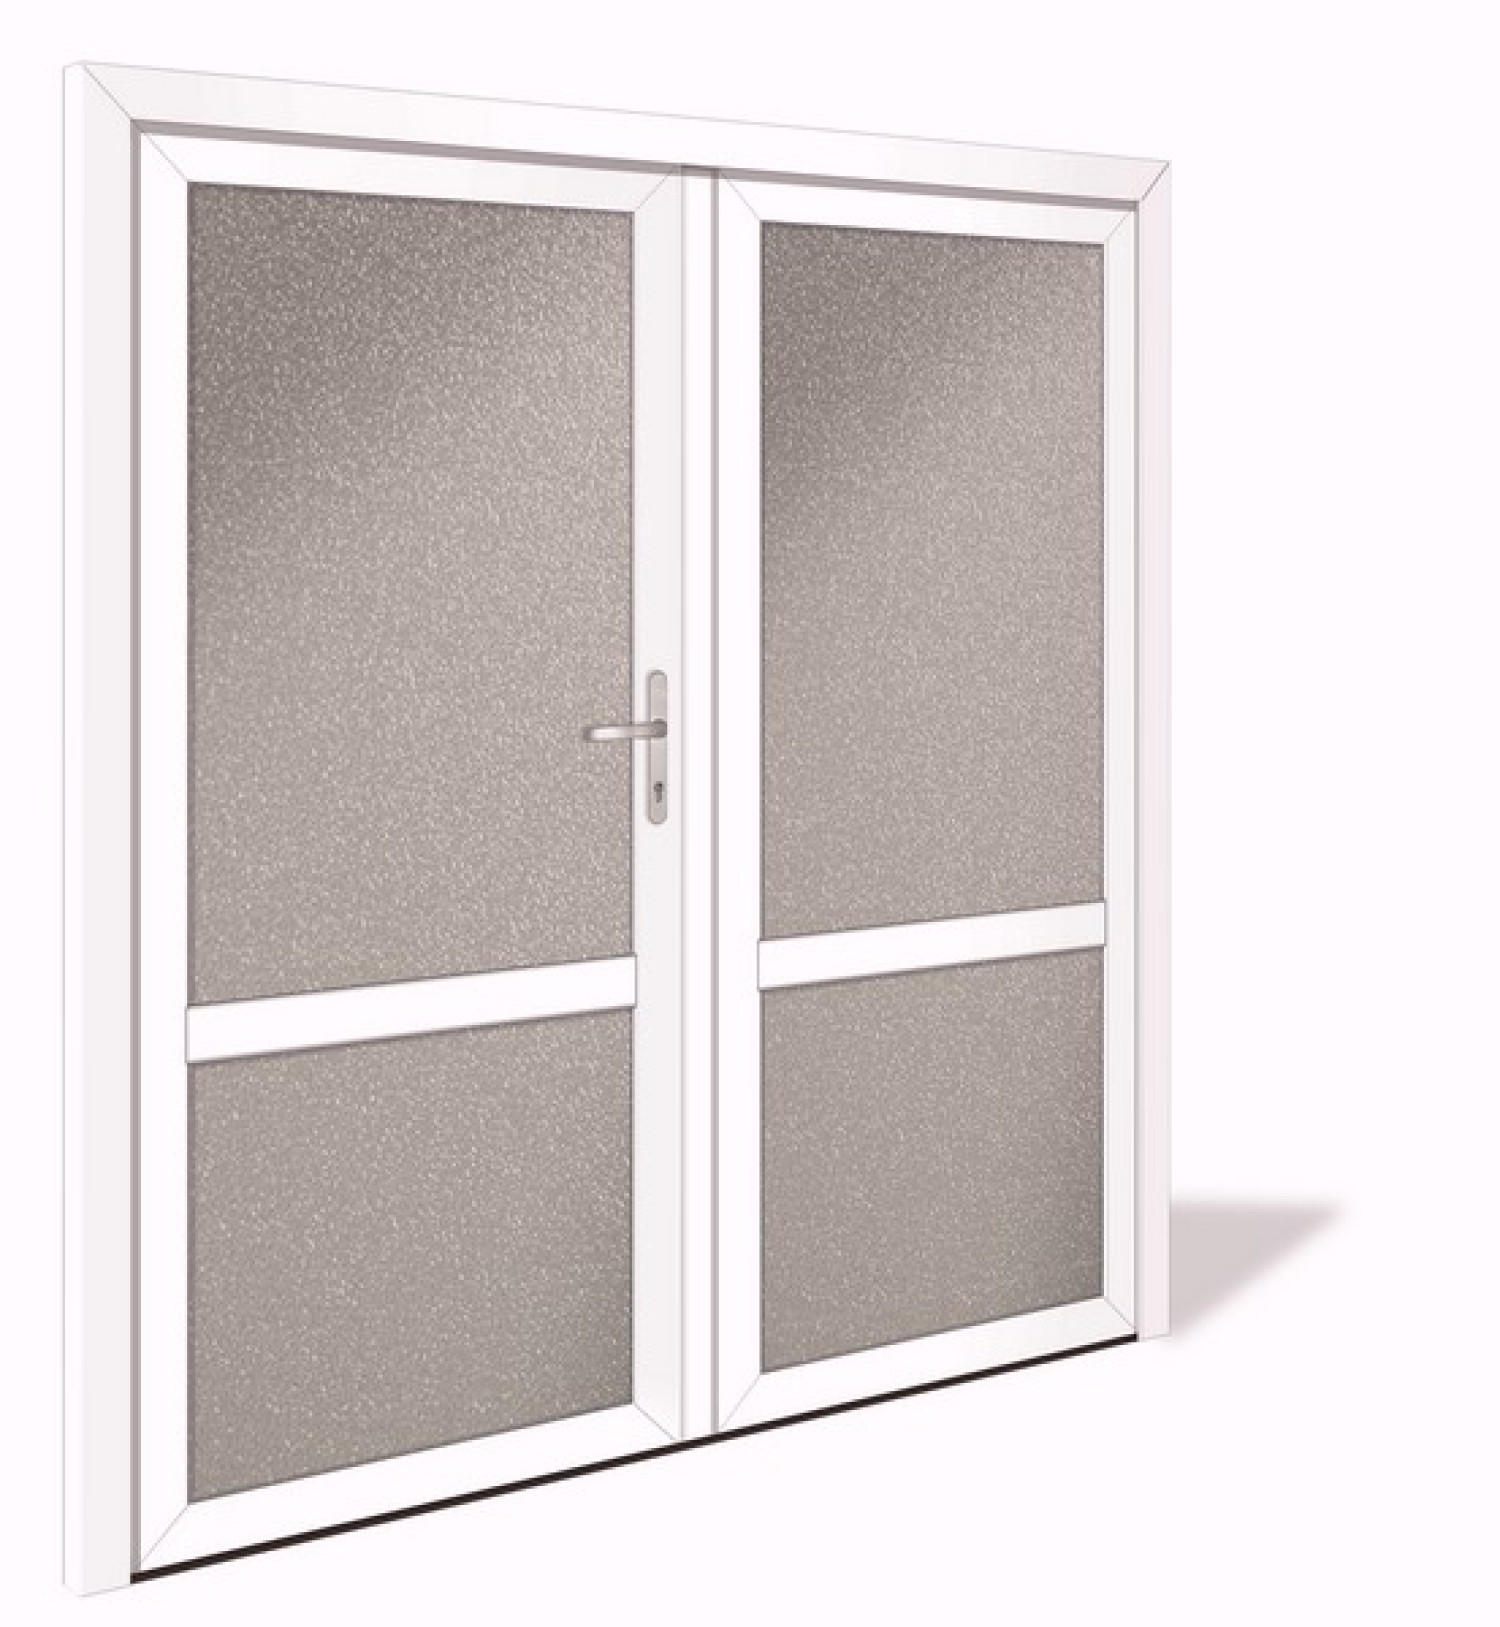 NET 1027-2 Kunststoff Doppelflügel Nebeneingangstür mit Glasausschnitt - Interio